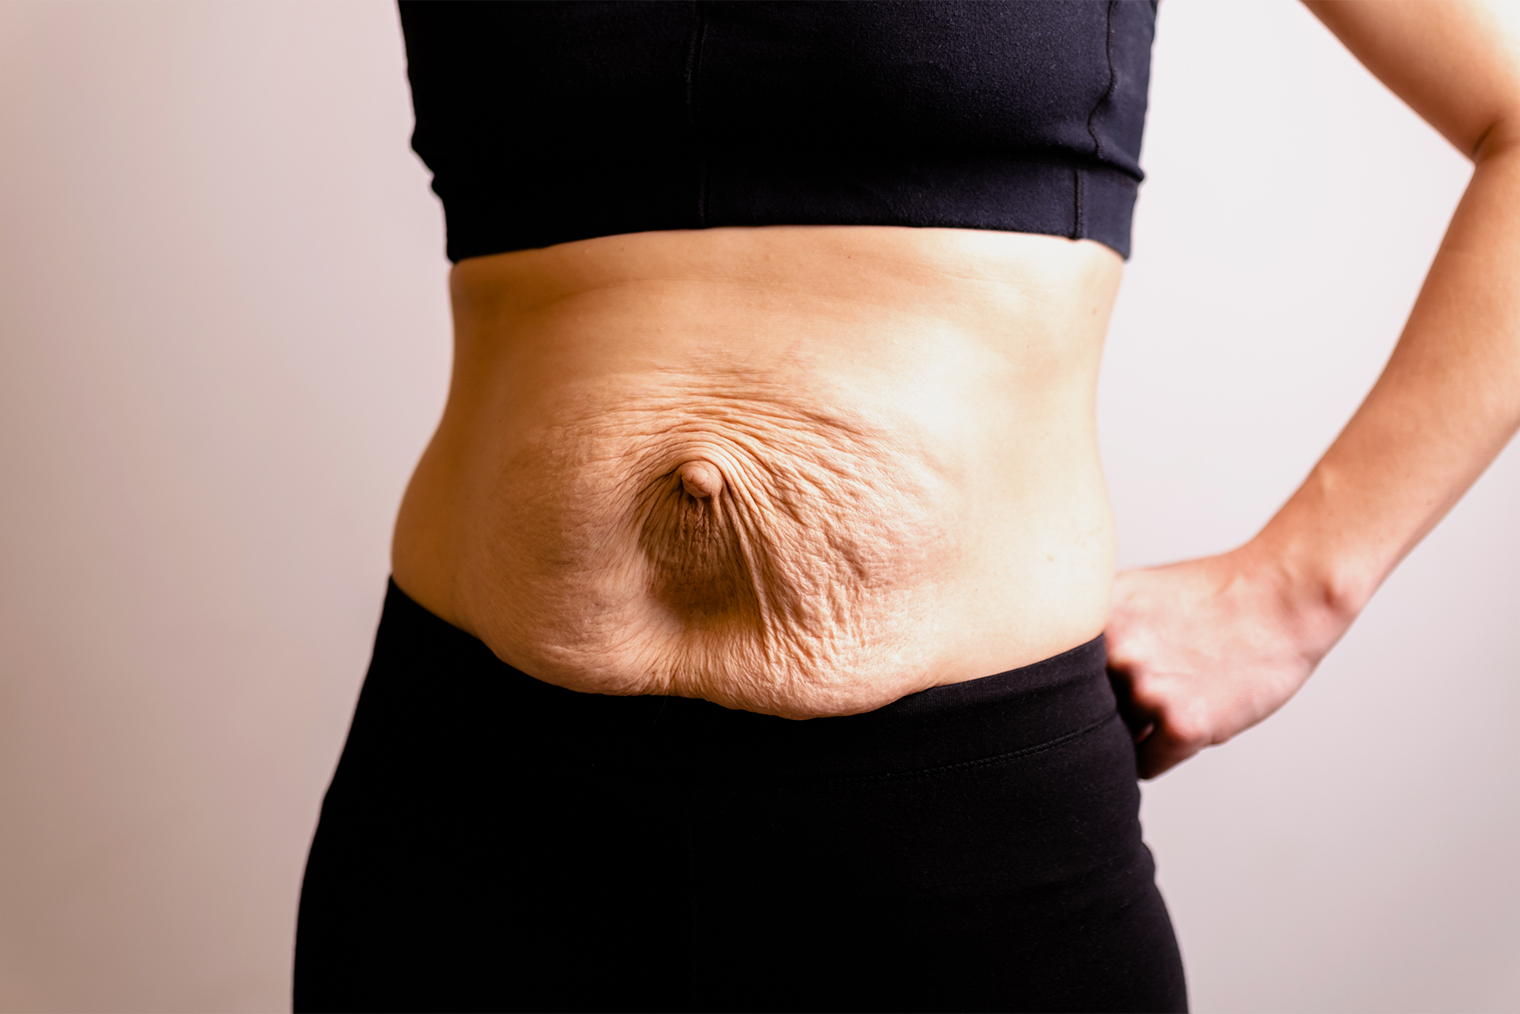 Если после родов вес уходит быстро, уже через несколько недель диастаз может стать заметным. Фотография — Habrovich / iStock